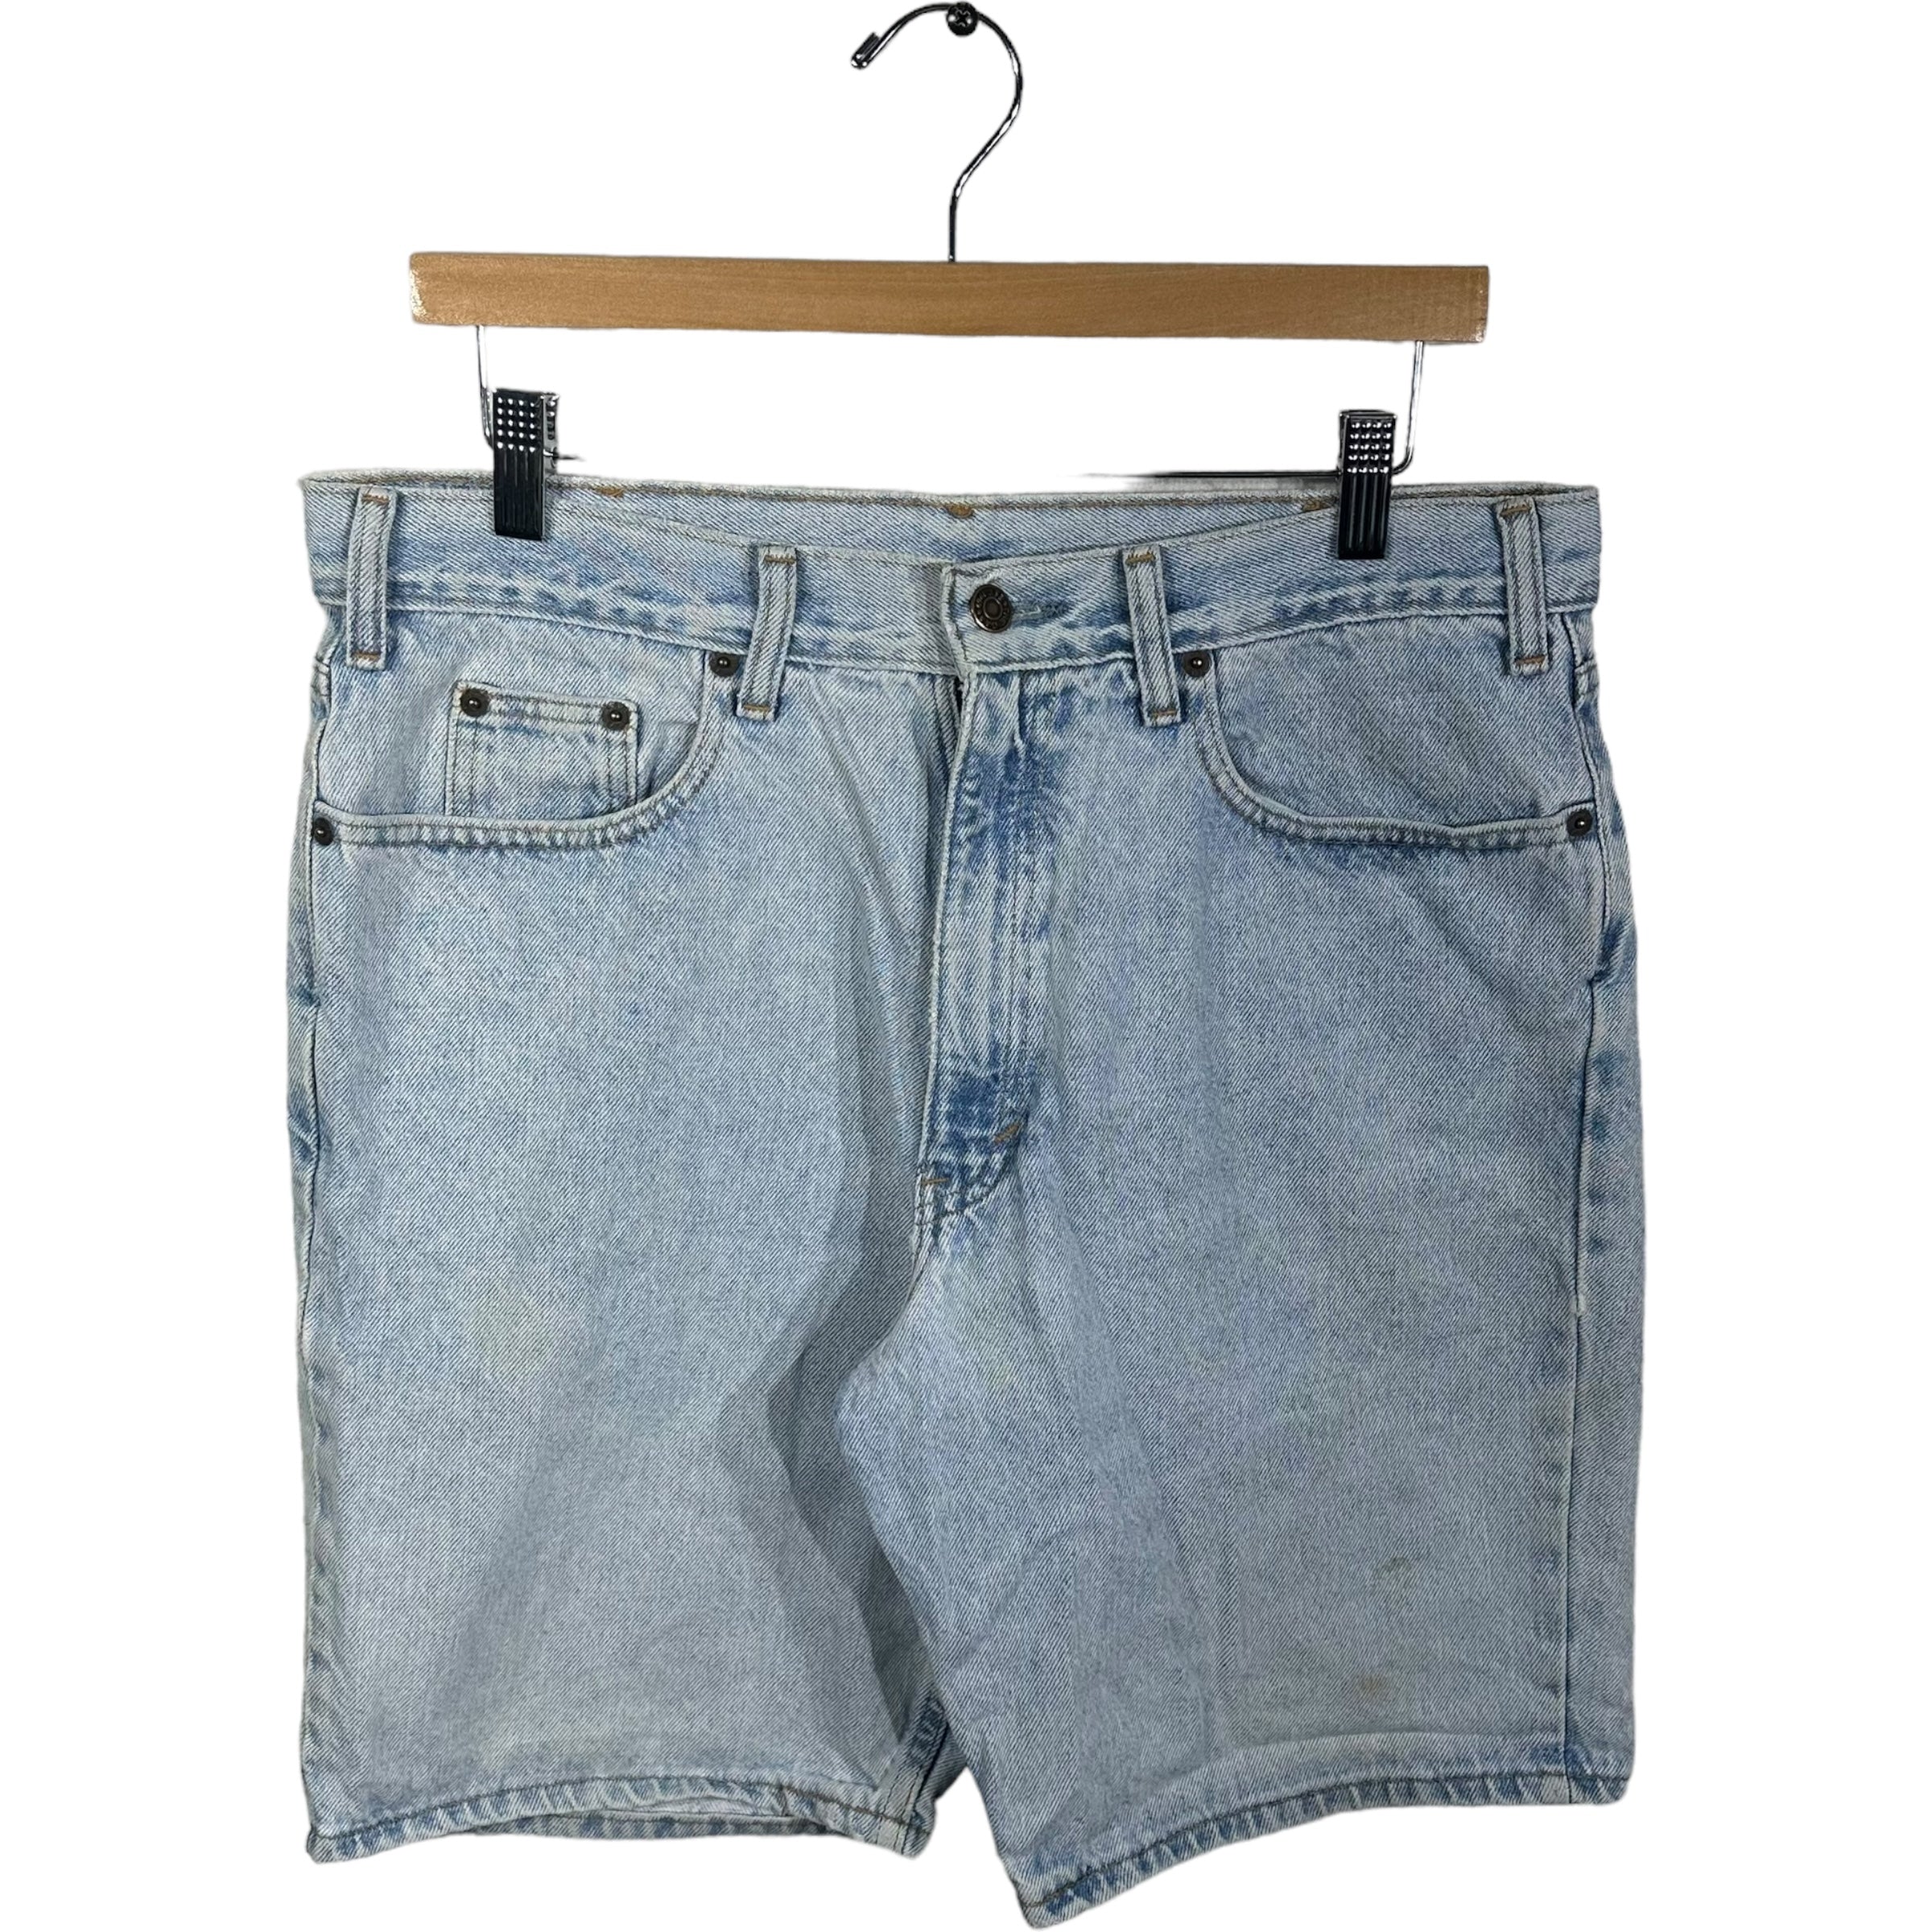 Vintage Gap Denim Shorts